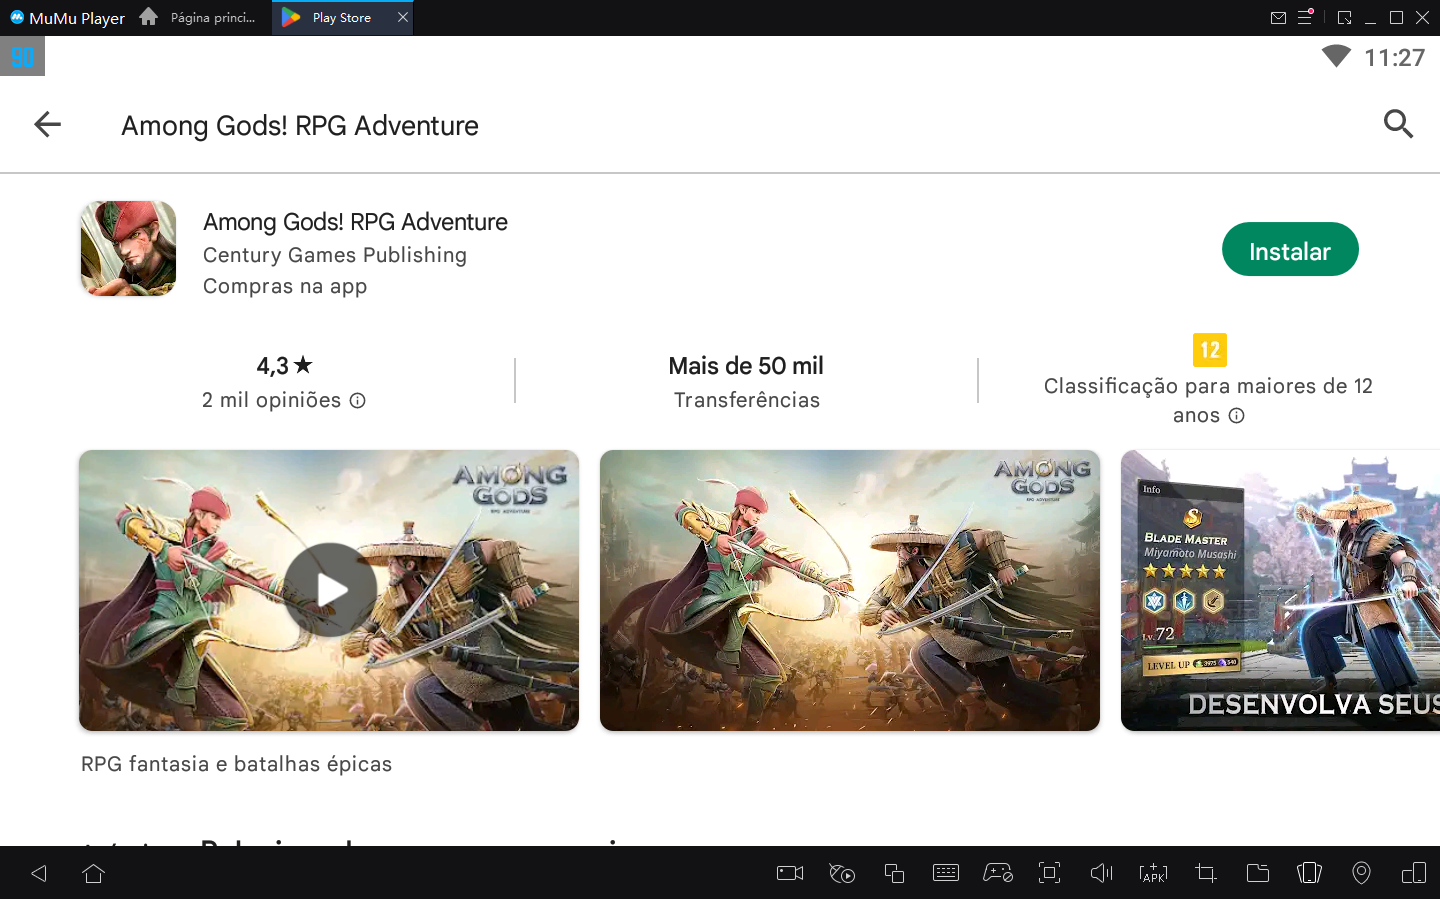 Como jogar Among Gods! RPG Adventure no PC com Emulador Android